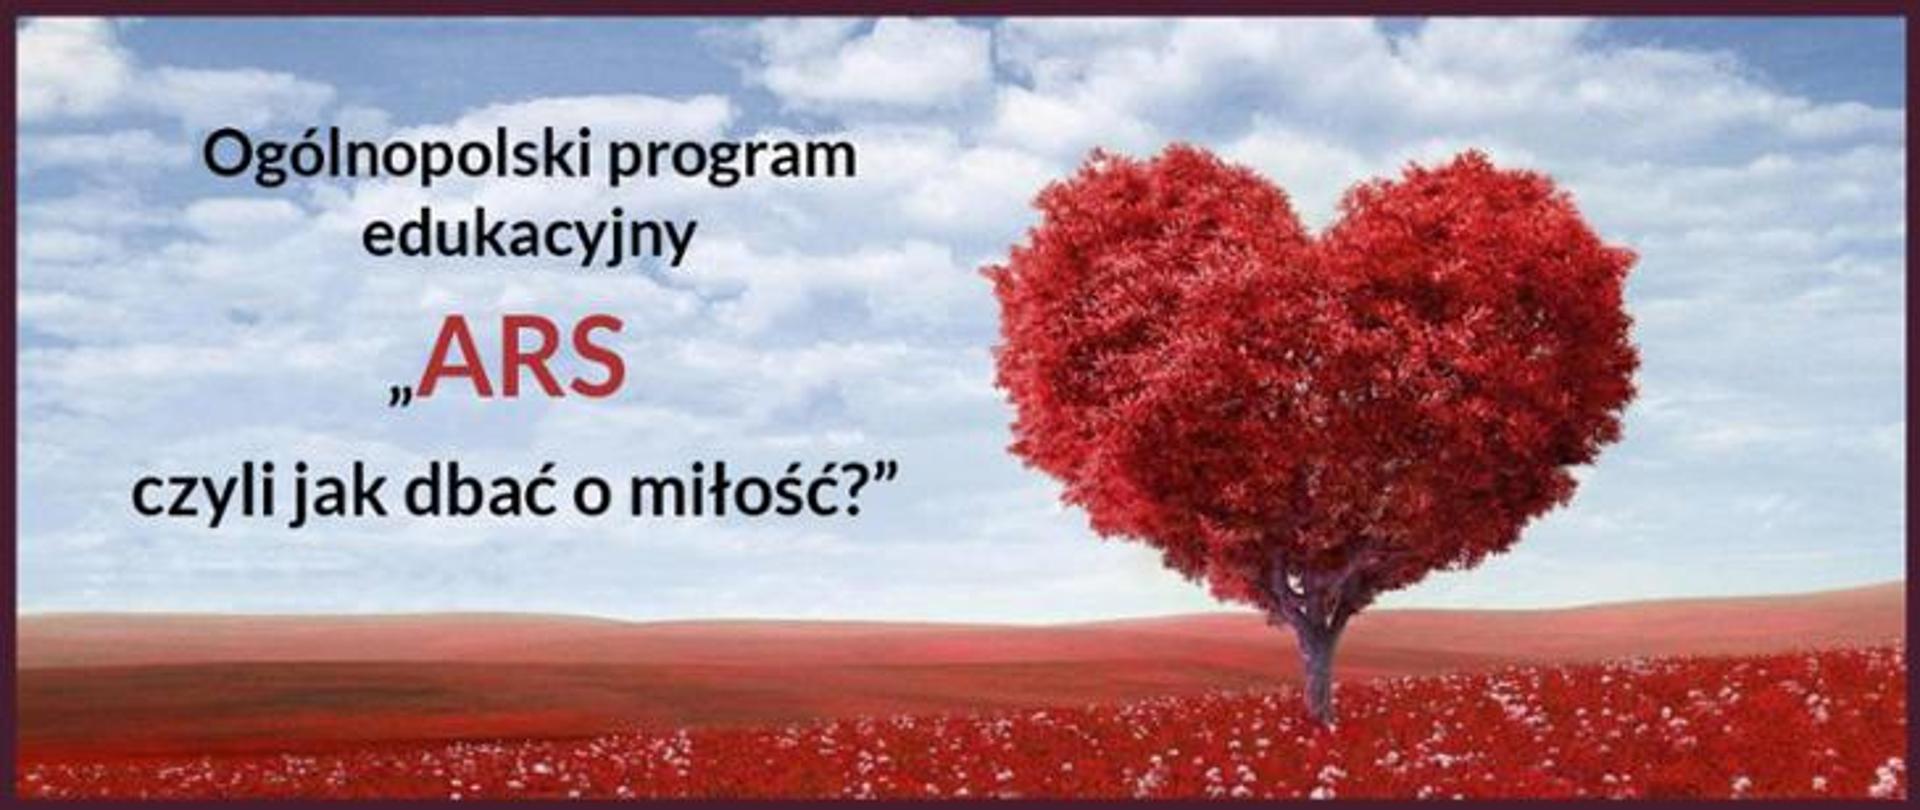 Ogólnopolski Program Edukacyjny "ARS, czyli jak dbać o miłość?"